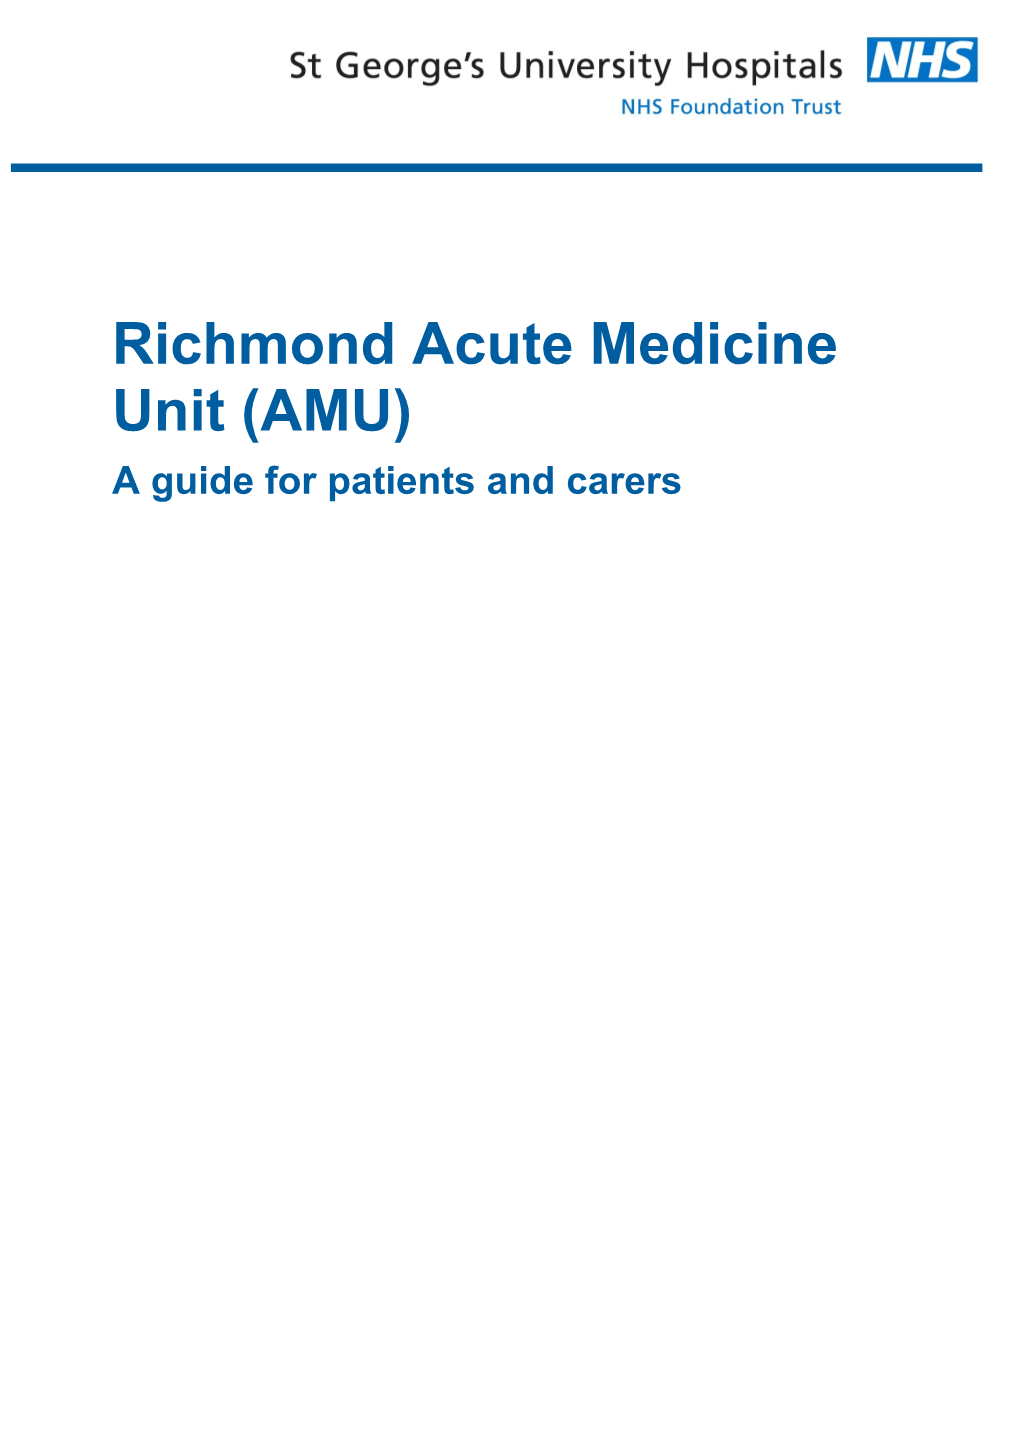 Richmond Acute Medicine Unit (AMU)